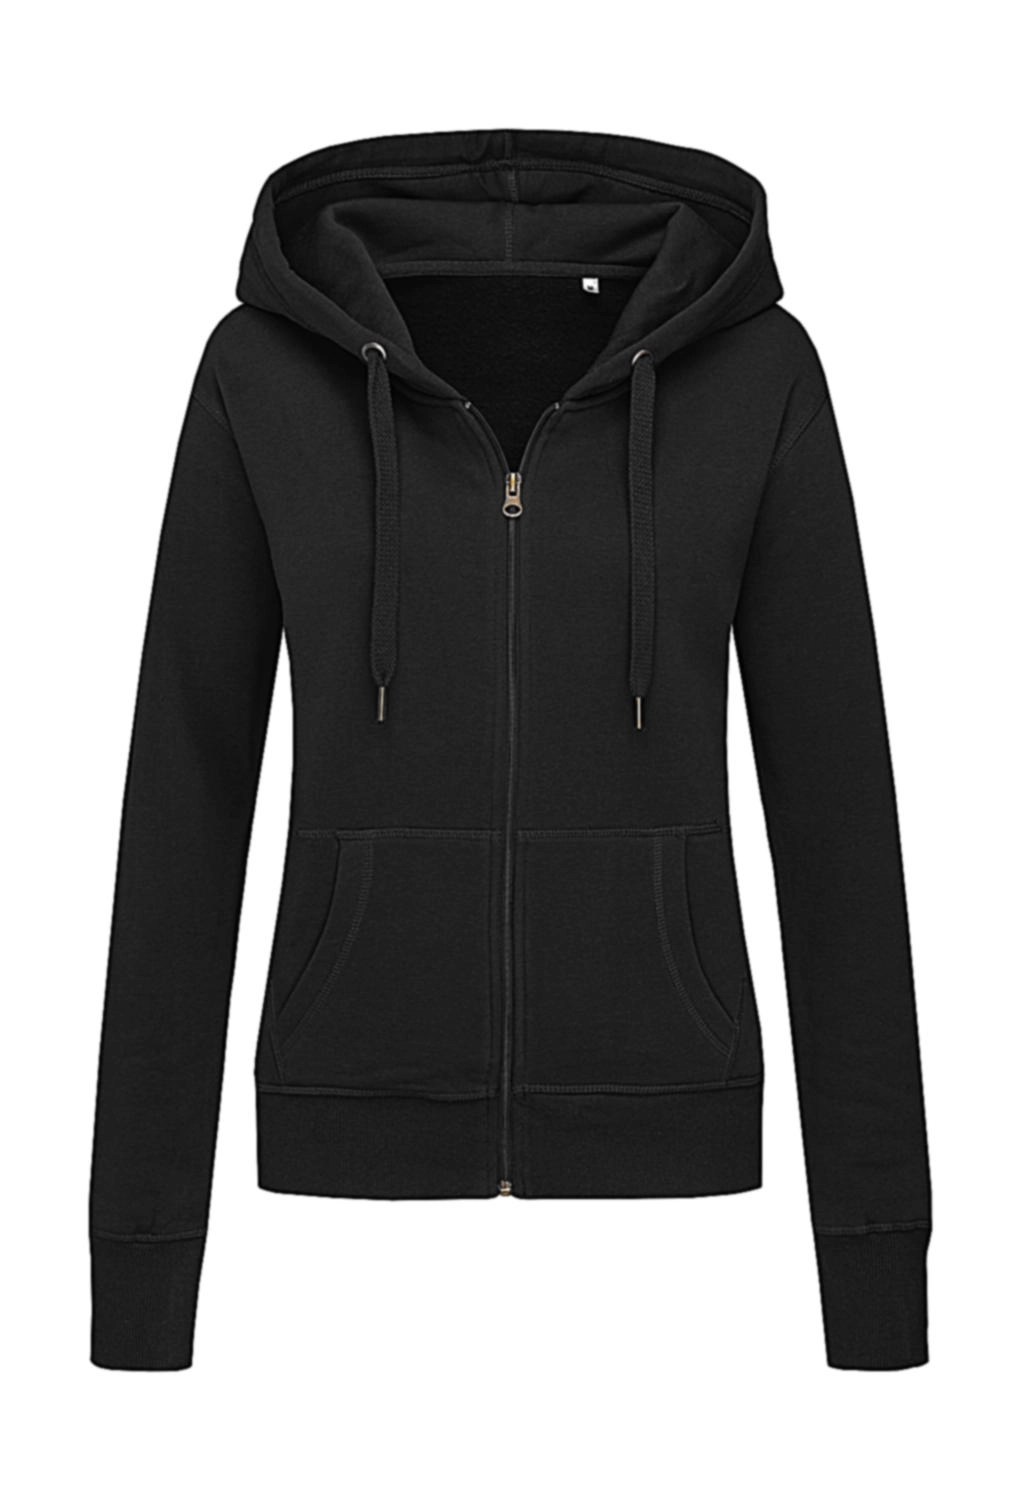 Sweat Jacket Select Women zum Besticken und Bedrucken in der Farbe Black Opal mit Ihren Logo, Schriftzug oder Motiv.